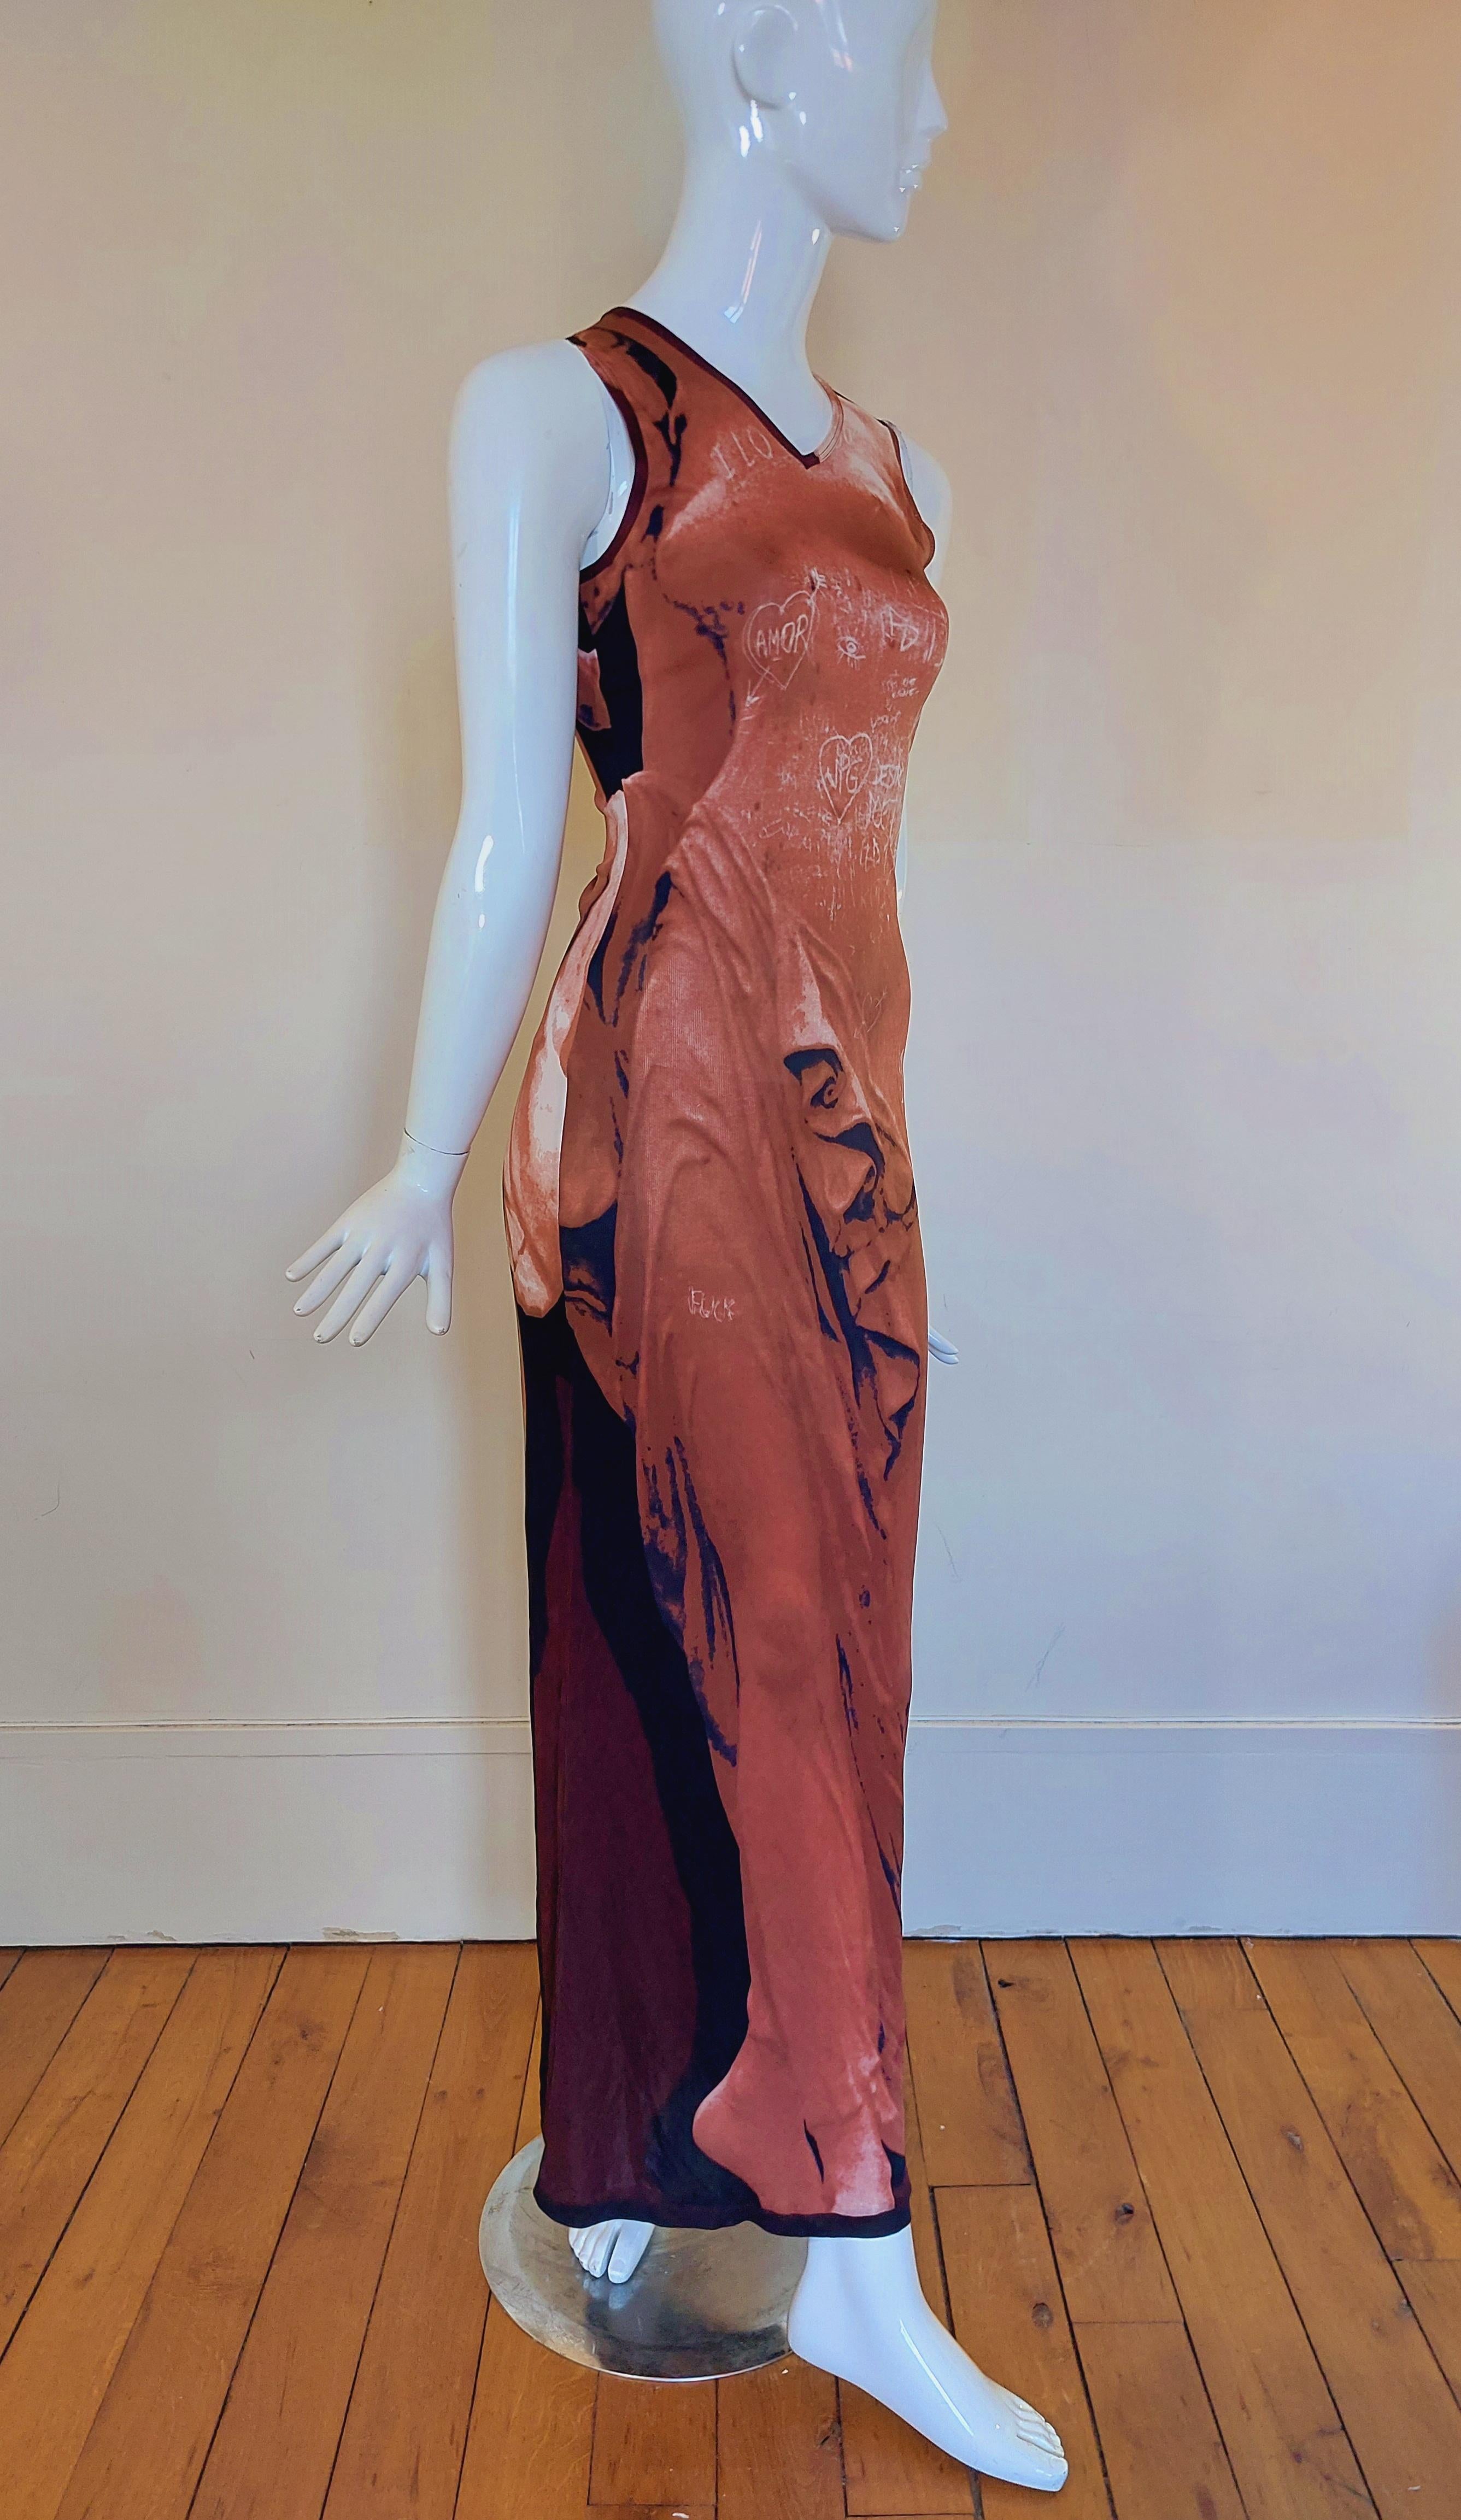 Jean Paul Gaultier S1999 Graffiti Goddess Venus Nude Trompe L'oeil Runway Dress 6